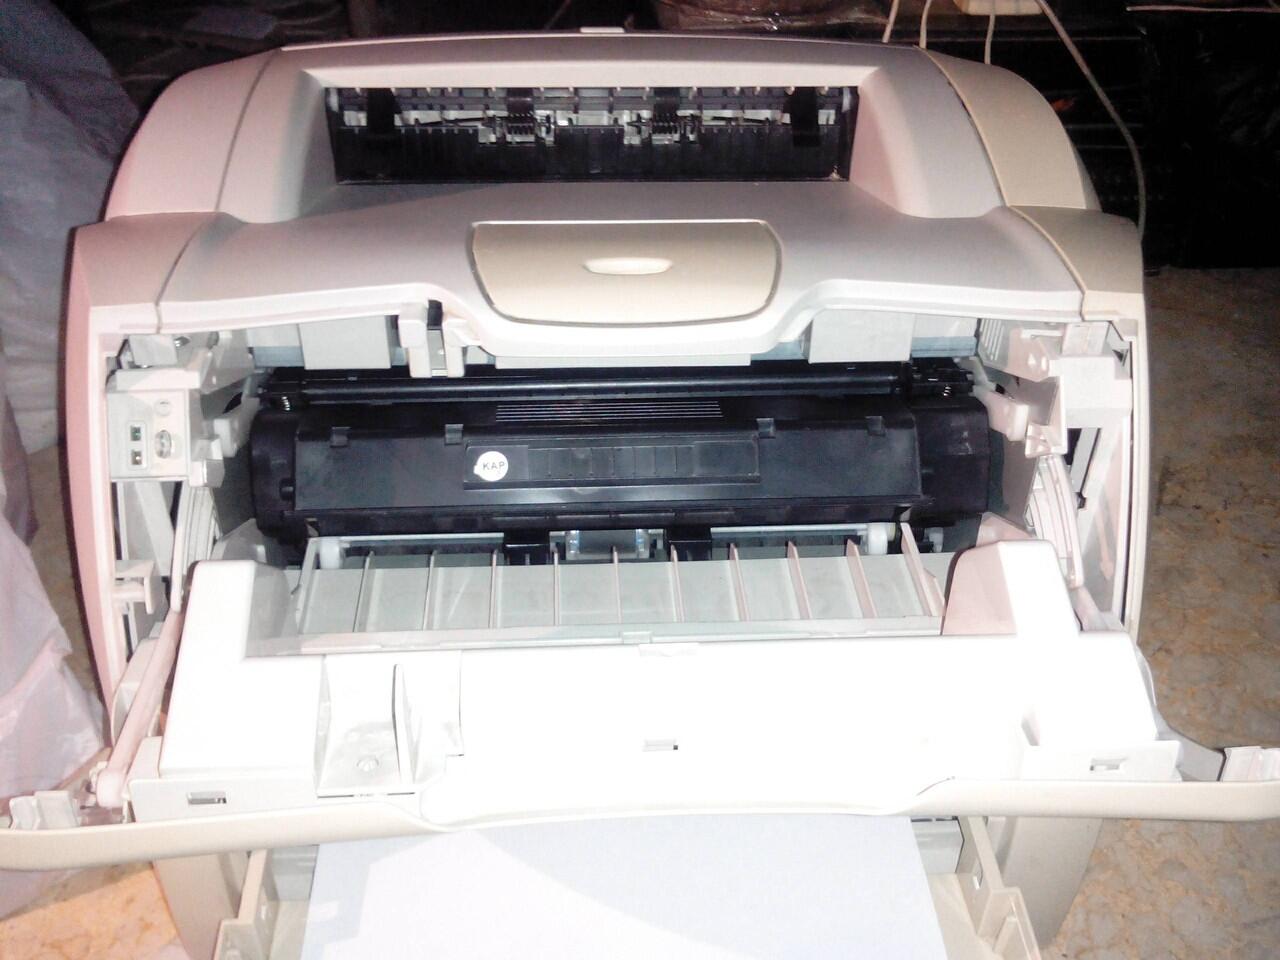 Terjual Murah! Printer Fotocopy Warna A3+ HP Laserjet 700 ...